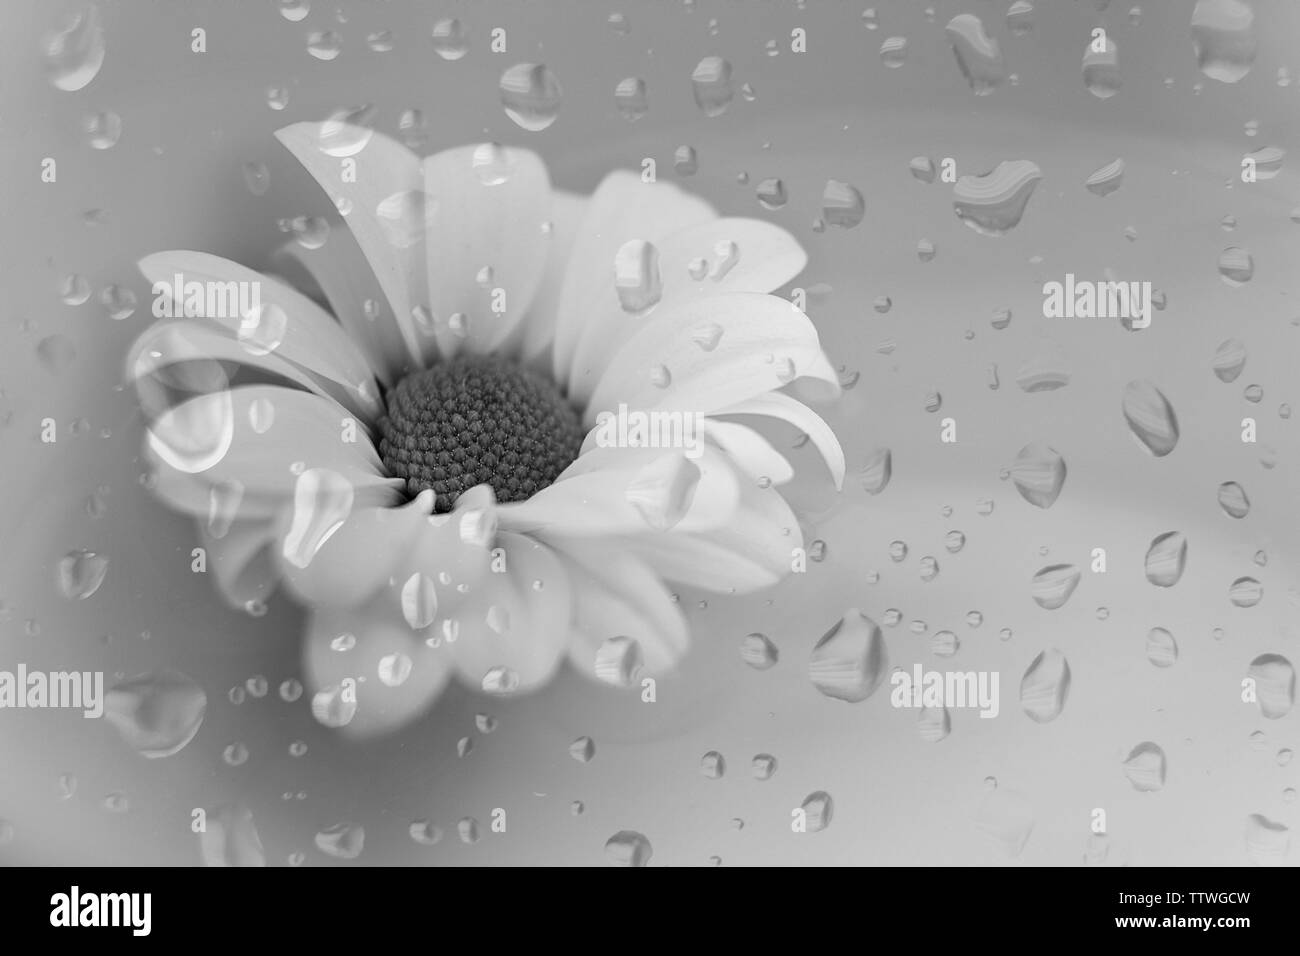 Schwarz-weiß-Bild der weißen Blüte auf dem Wasser schwimmend Stockfoto